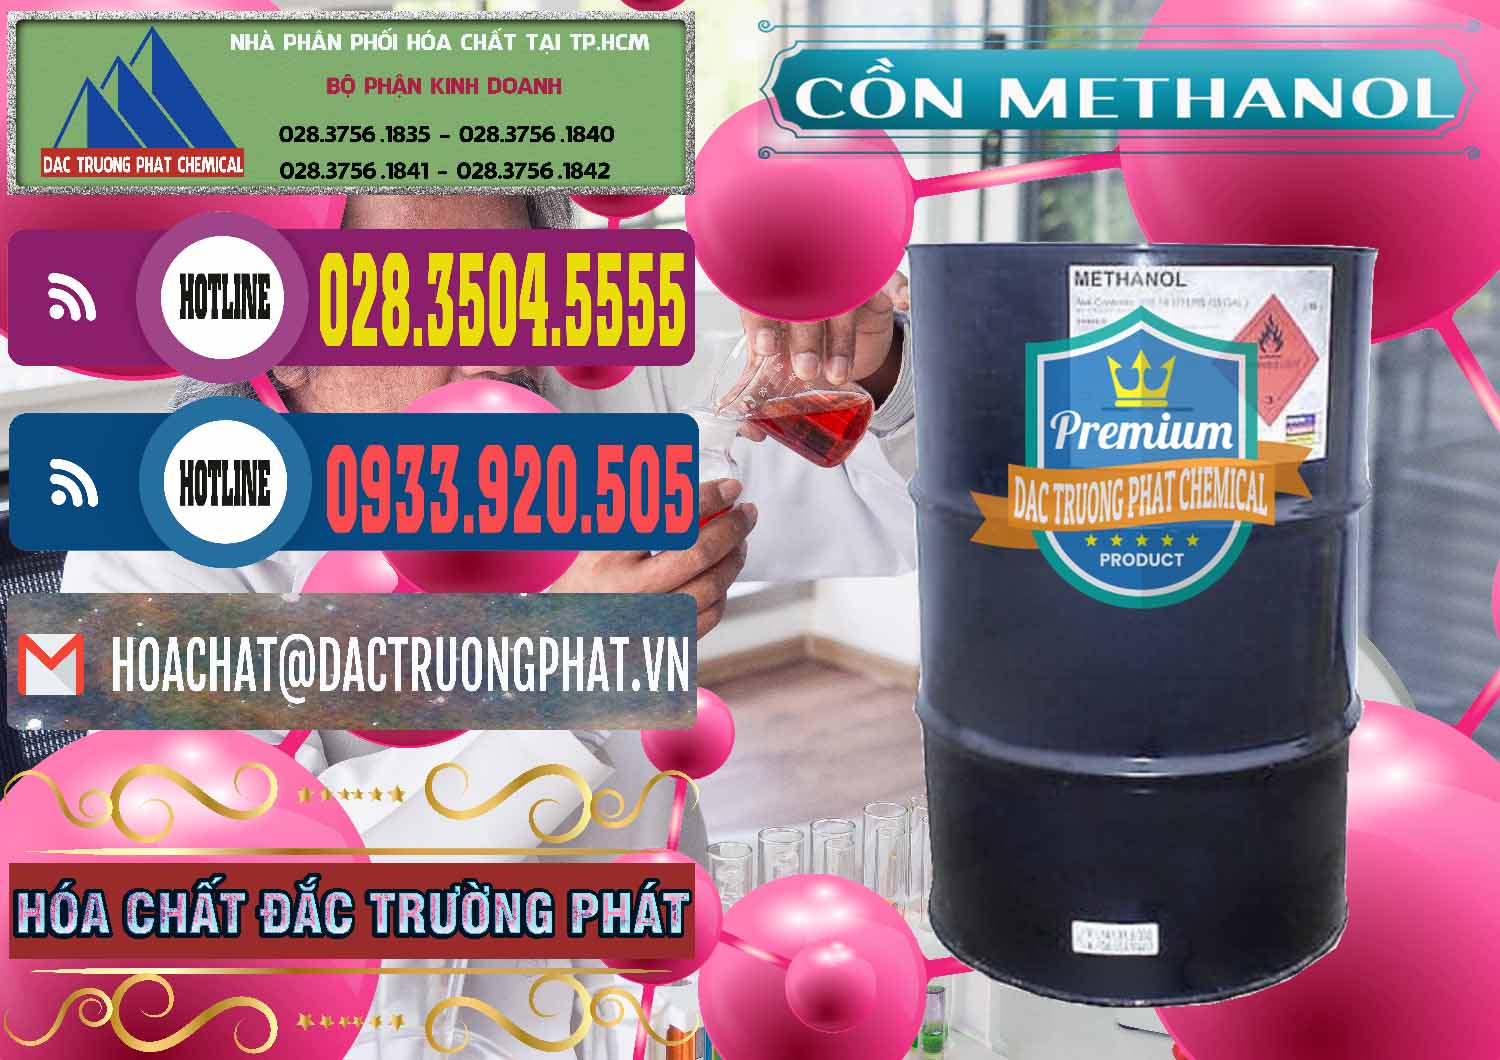 Công ty chuyên bán - cung cấp Cồn Methanol - Methyl Alcohol Mã Lai Malaysia - 0331 - Cty chuyên nhập khẩu - cung cấp hóa chất tại TP.HCM - muabanhoachat.com.vn